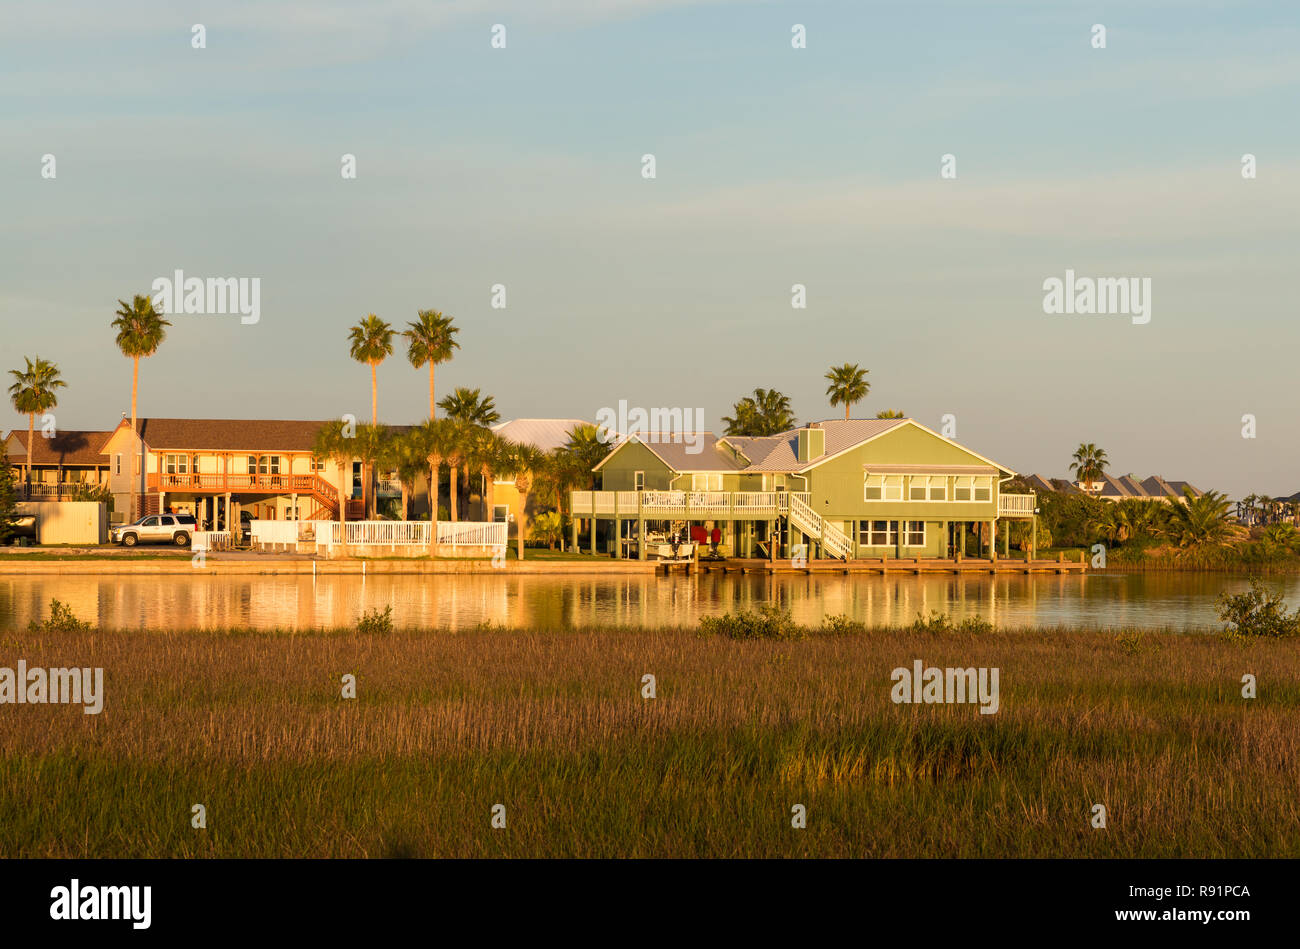 Wohnhäuser der vordringenden verehrten Feuchtgebiete im oberen Gulf Coast. Aransas National Wildlife Refuge, Texas, USA. Stockfoto